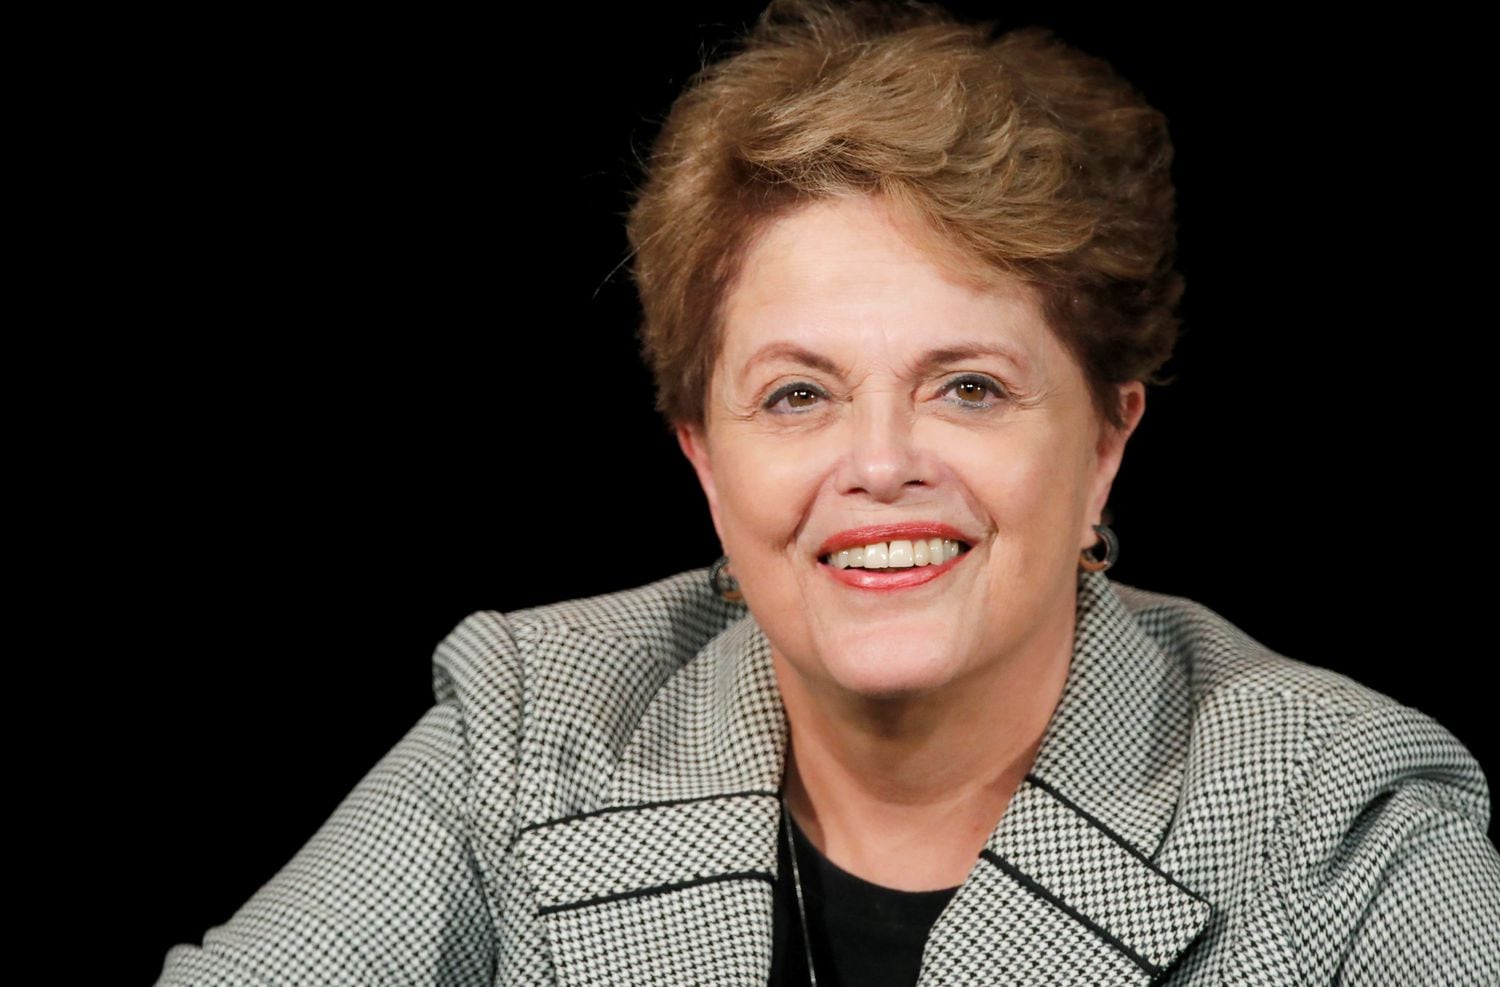 A ex-presidenta Dilma Rousseff, em um evento em Paris em março deste ano.